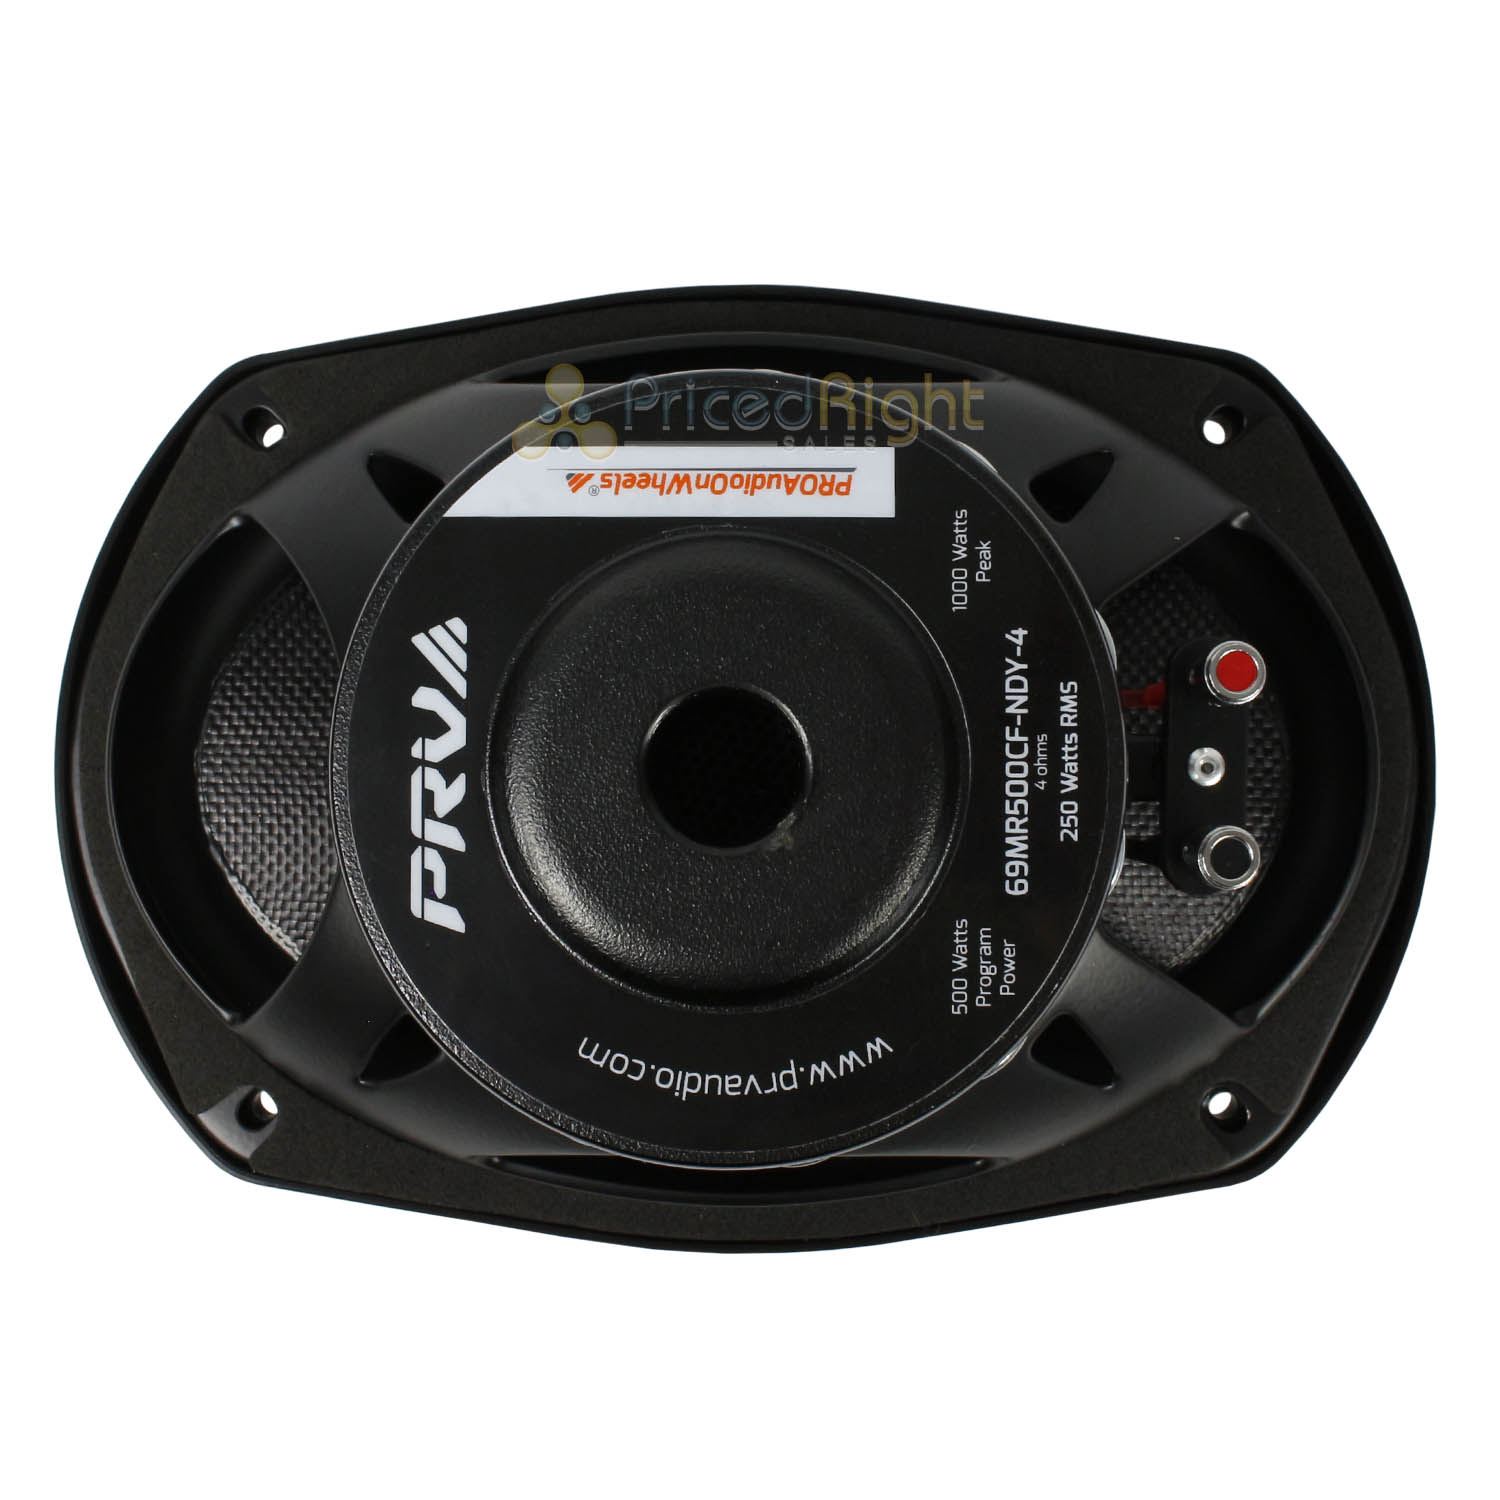 PRV Audio 6 x 9" Mid Range Loudspeakers Water Resistant Pair 69MR500CF-NDY-4